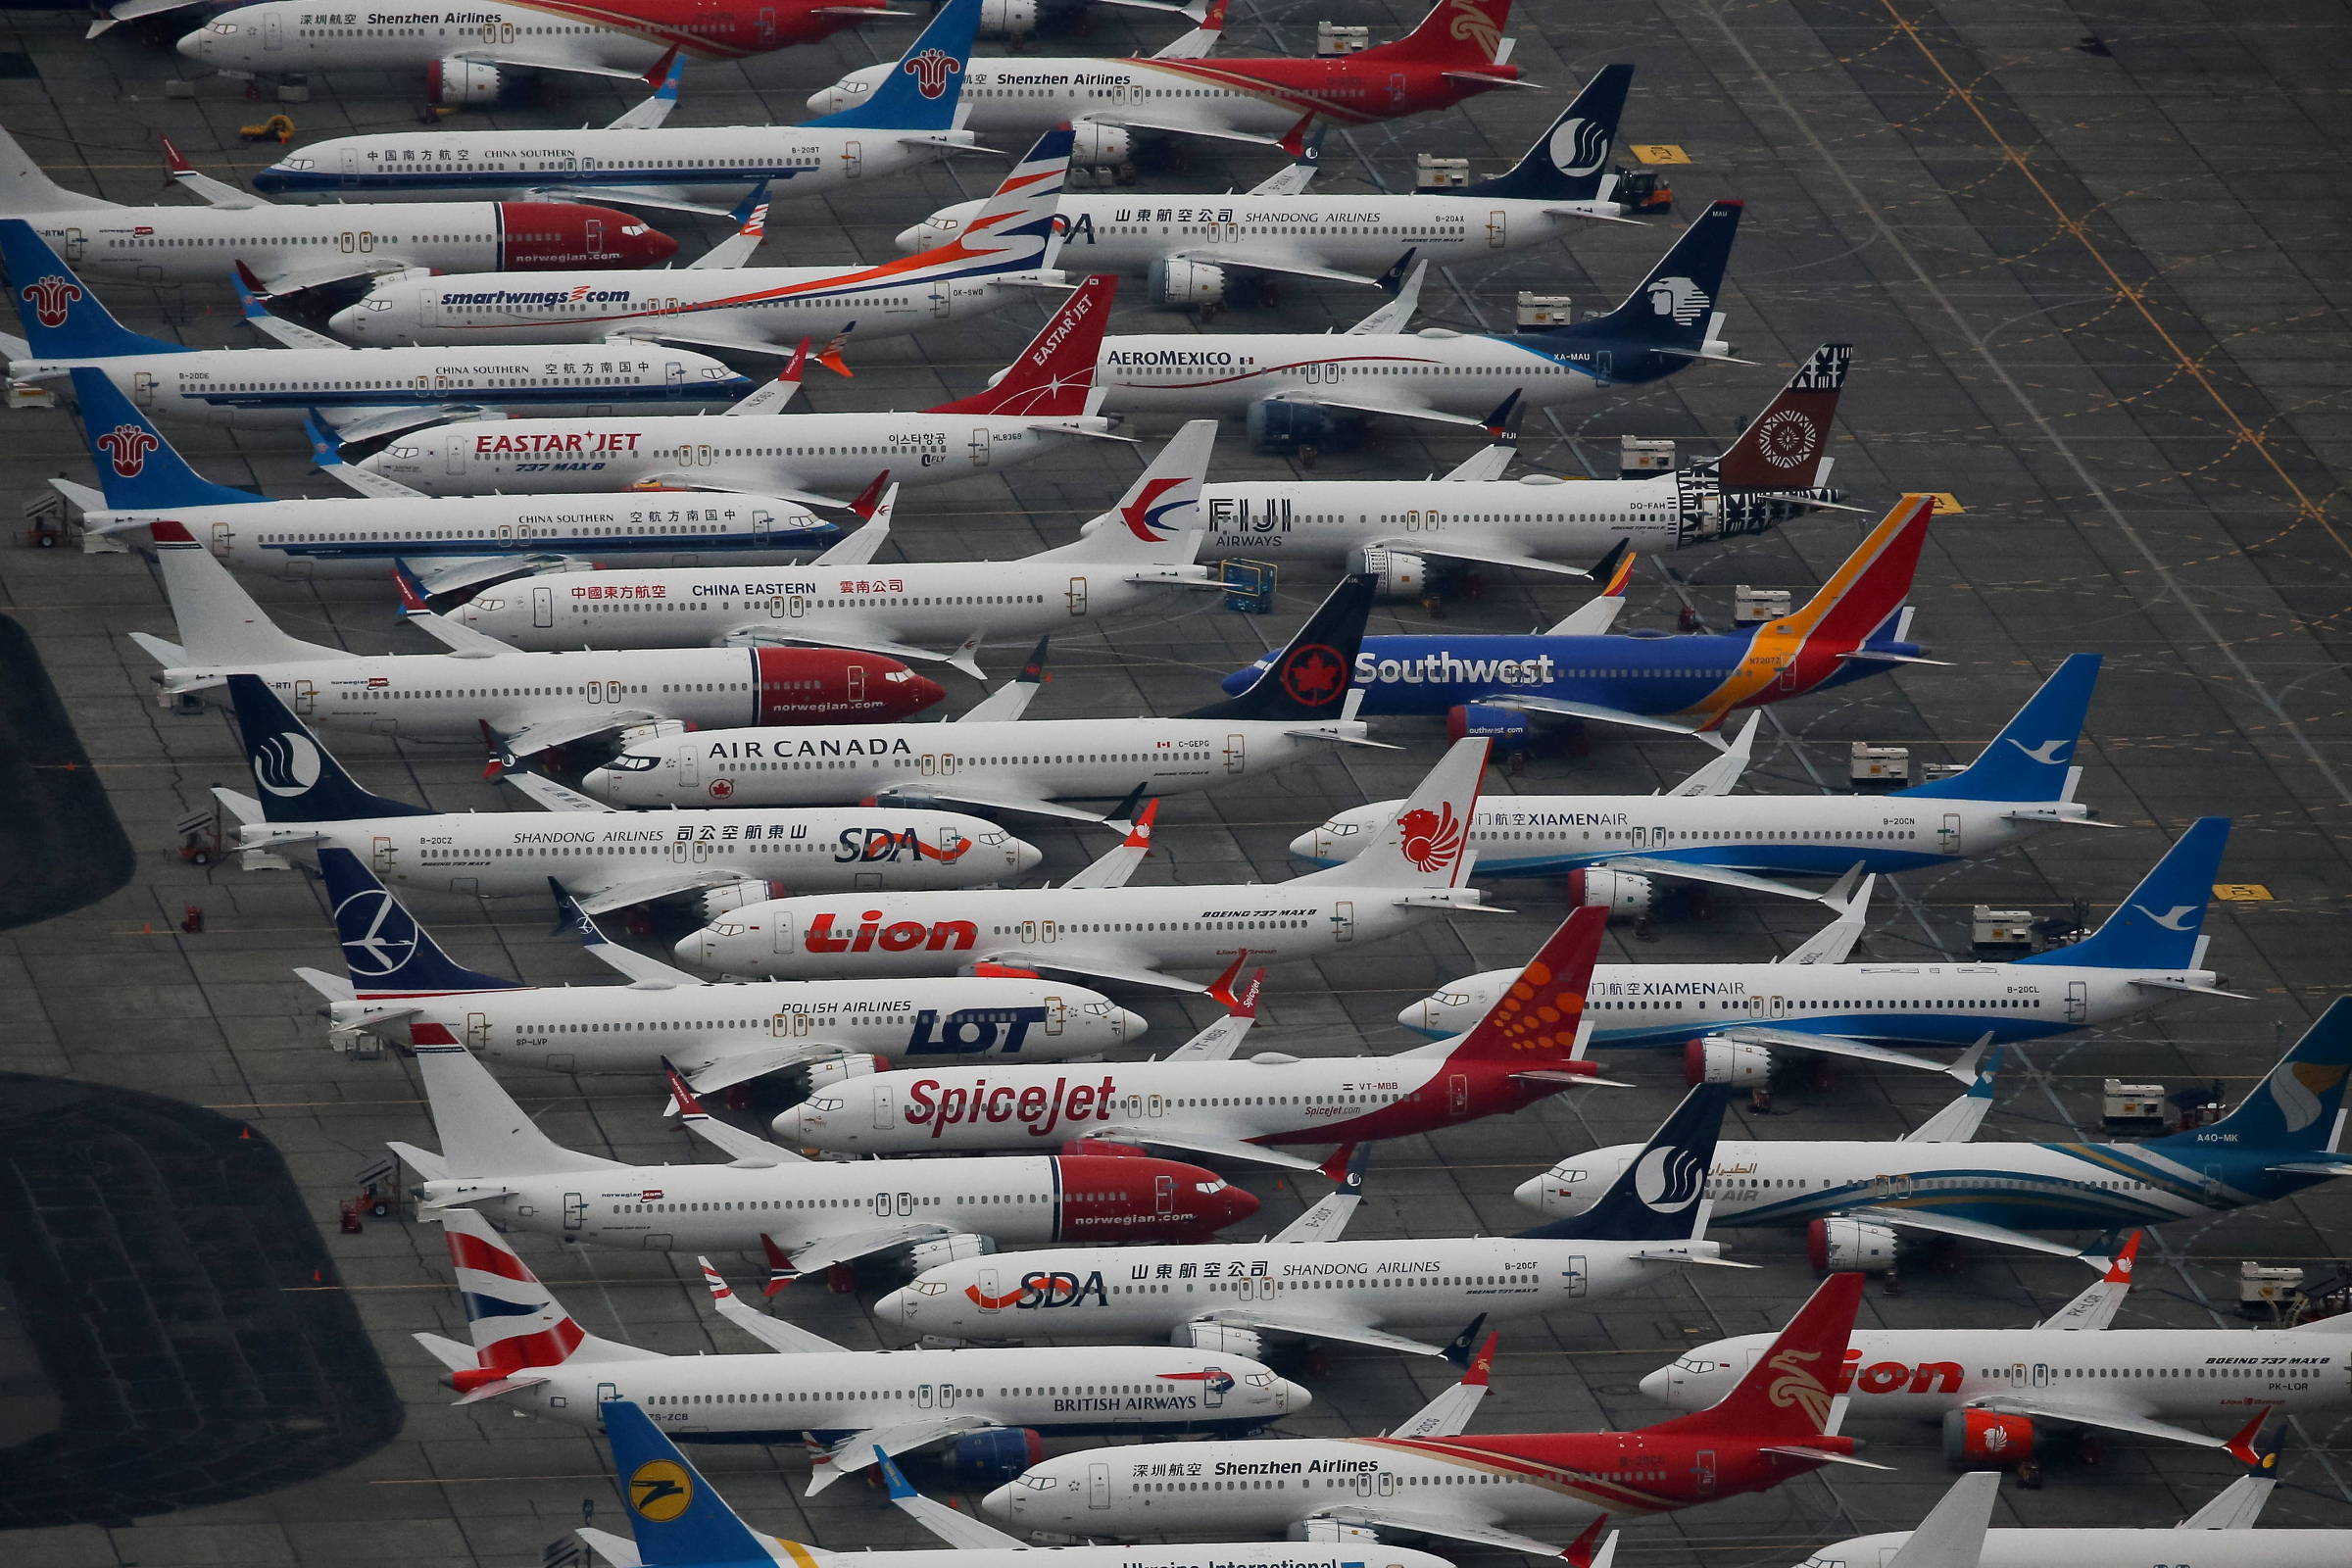 EUA liberam voos com o Boeing 737 MAX após 20 meses de suspensão -  18/11/2020 - Mercado - Folha